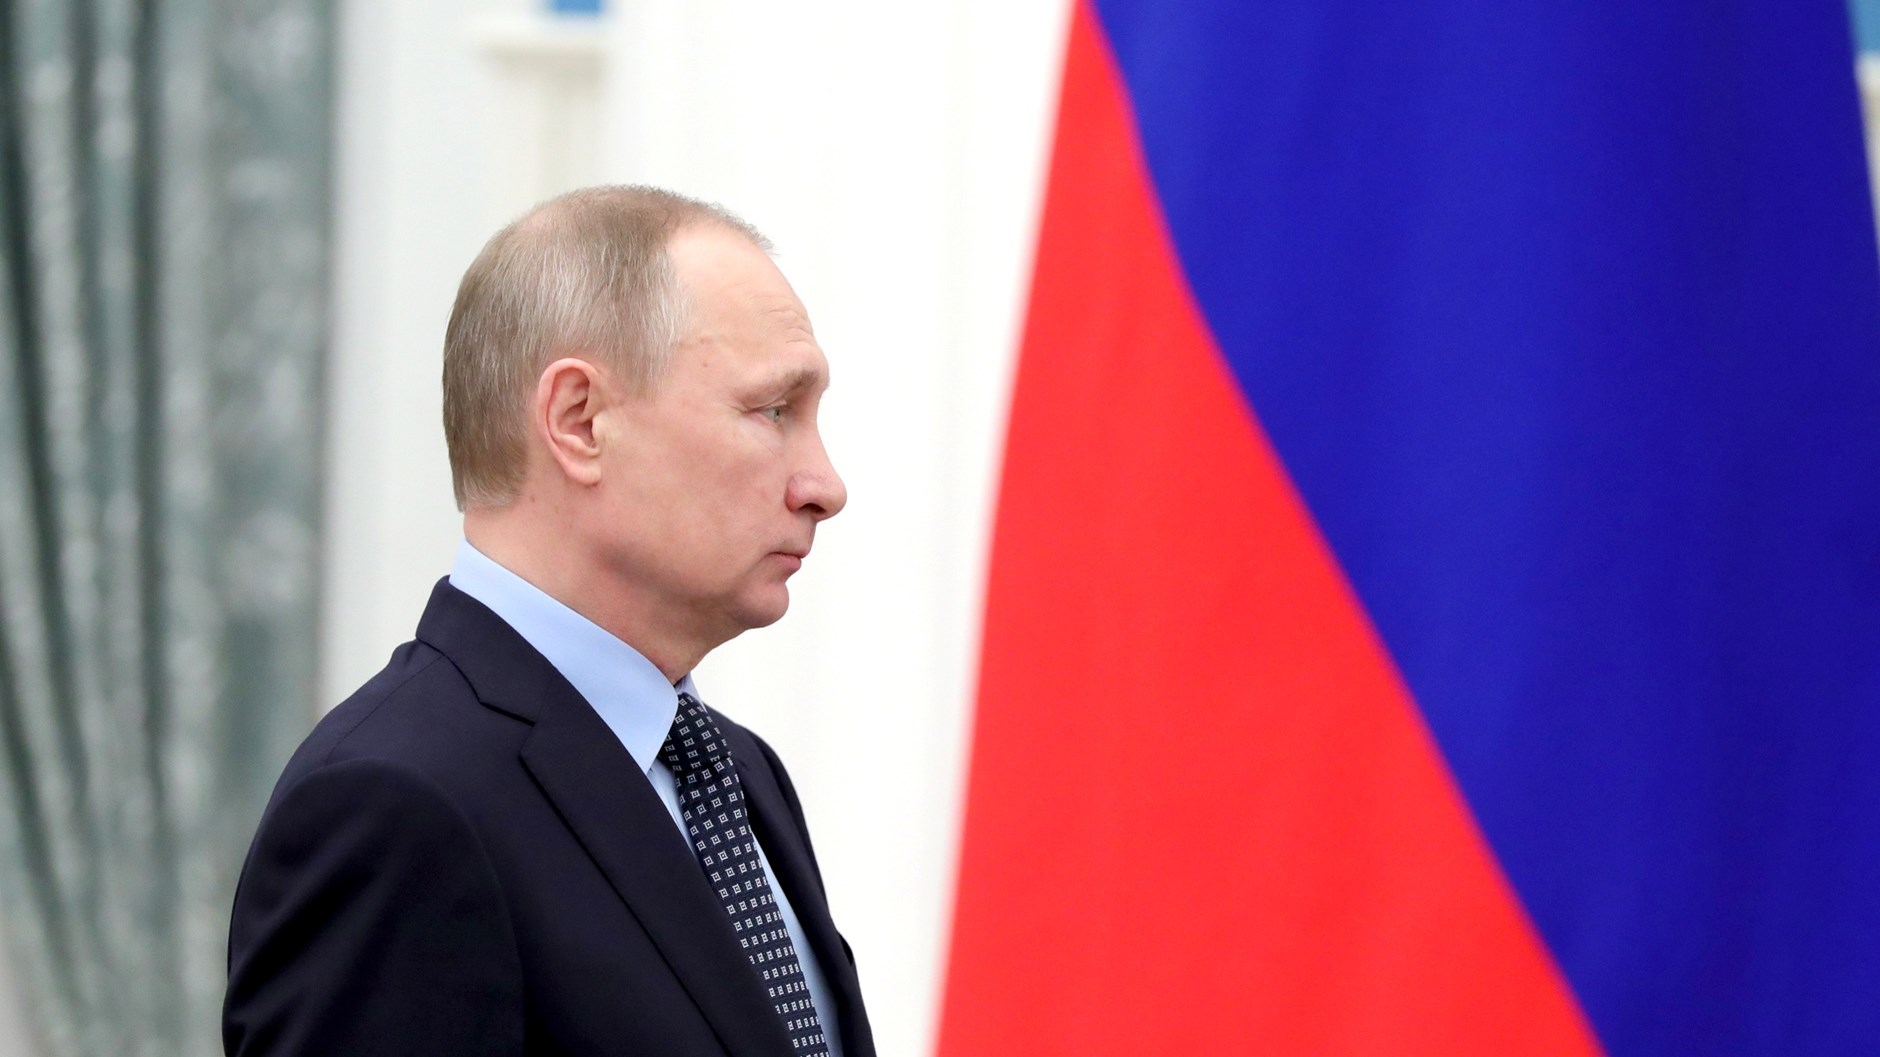 Ο Πούτιν έδωσε εντολή για την καταστροφή των χημικών όπλων της Ρωσίας